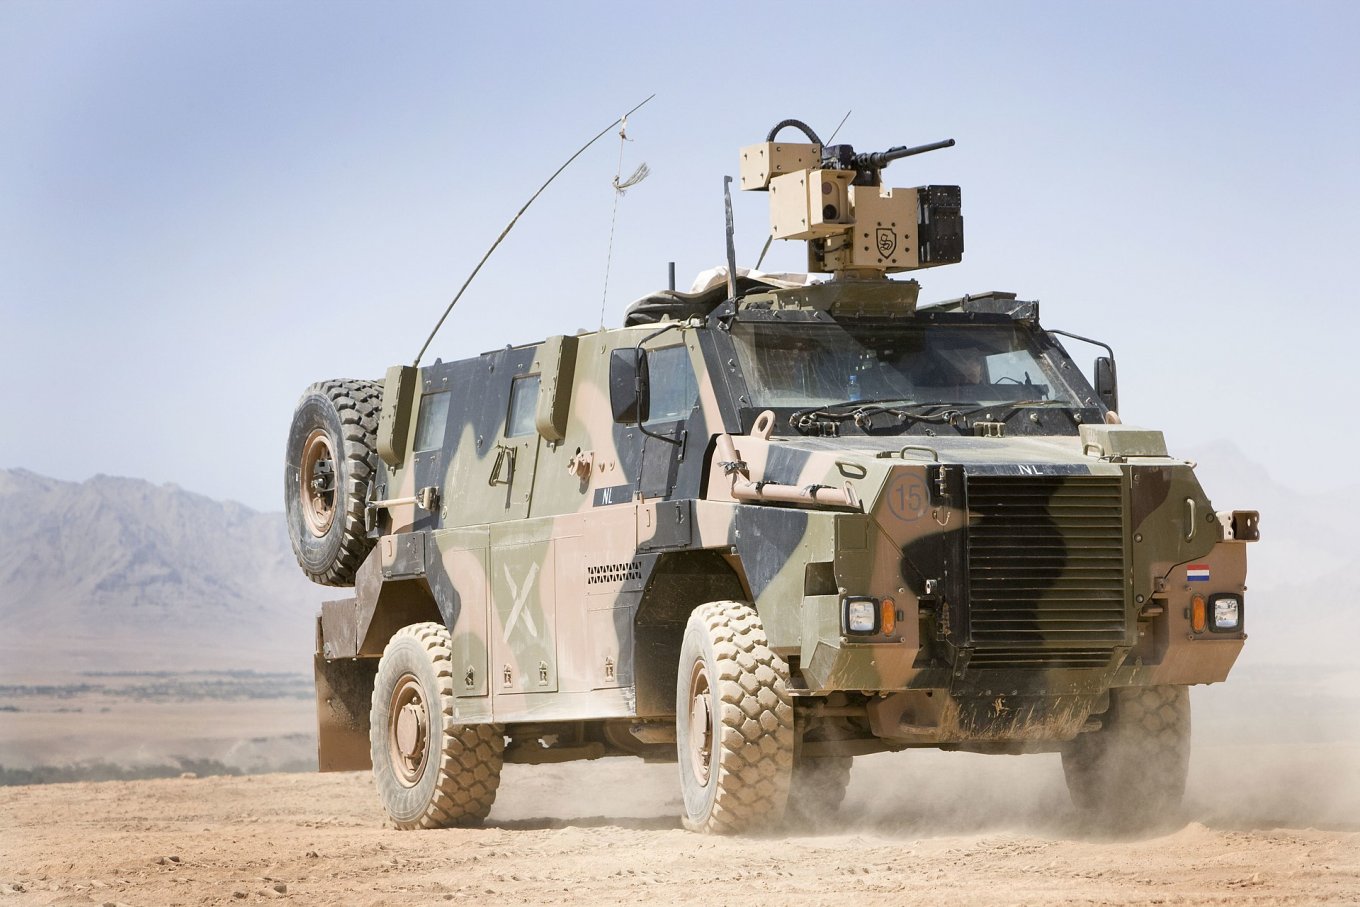 Defense Express / Bushmaster PMV of the Netherlands